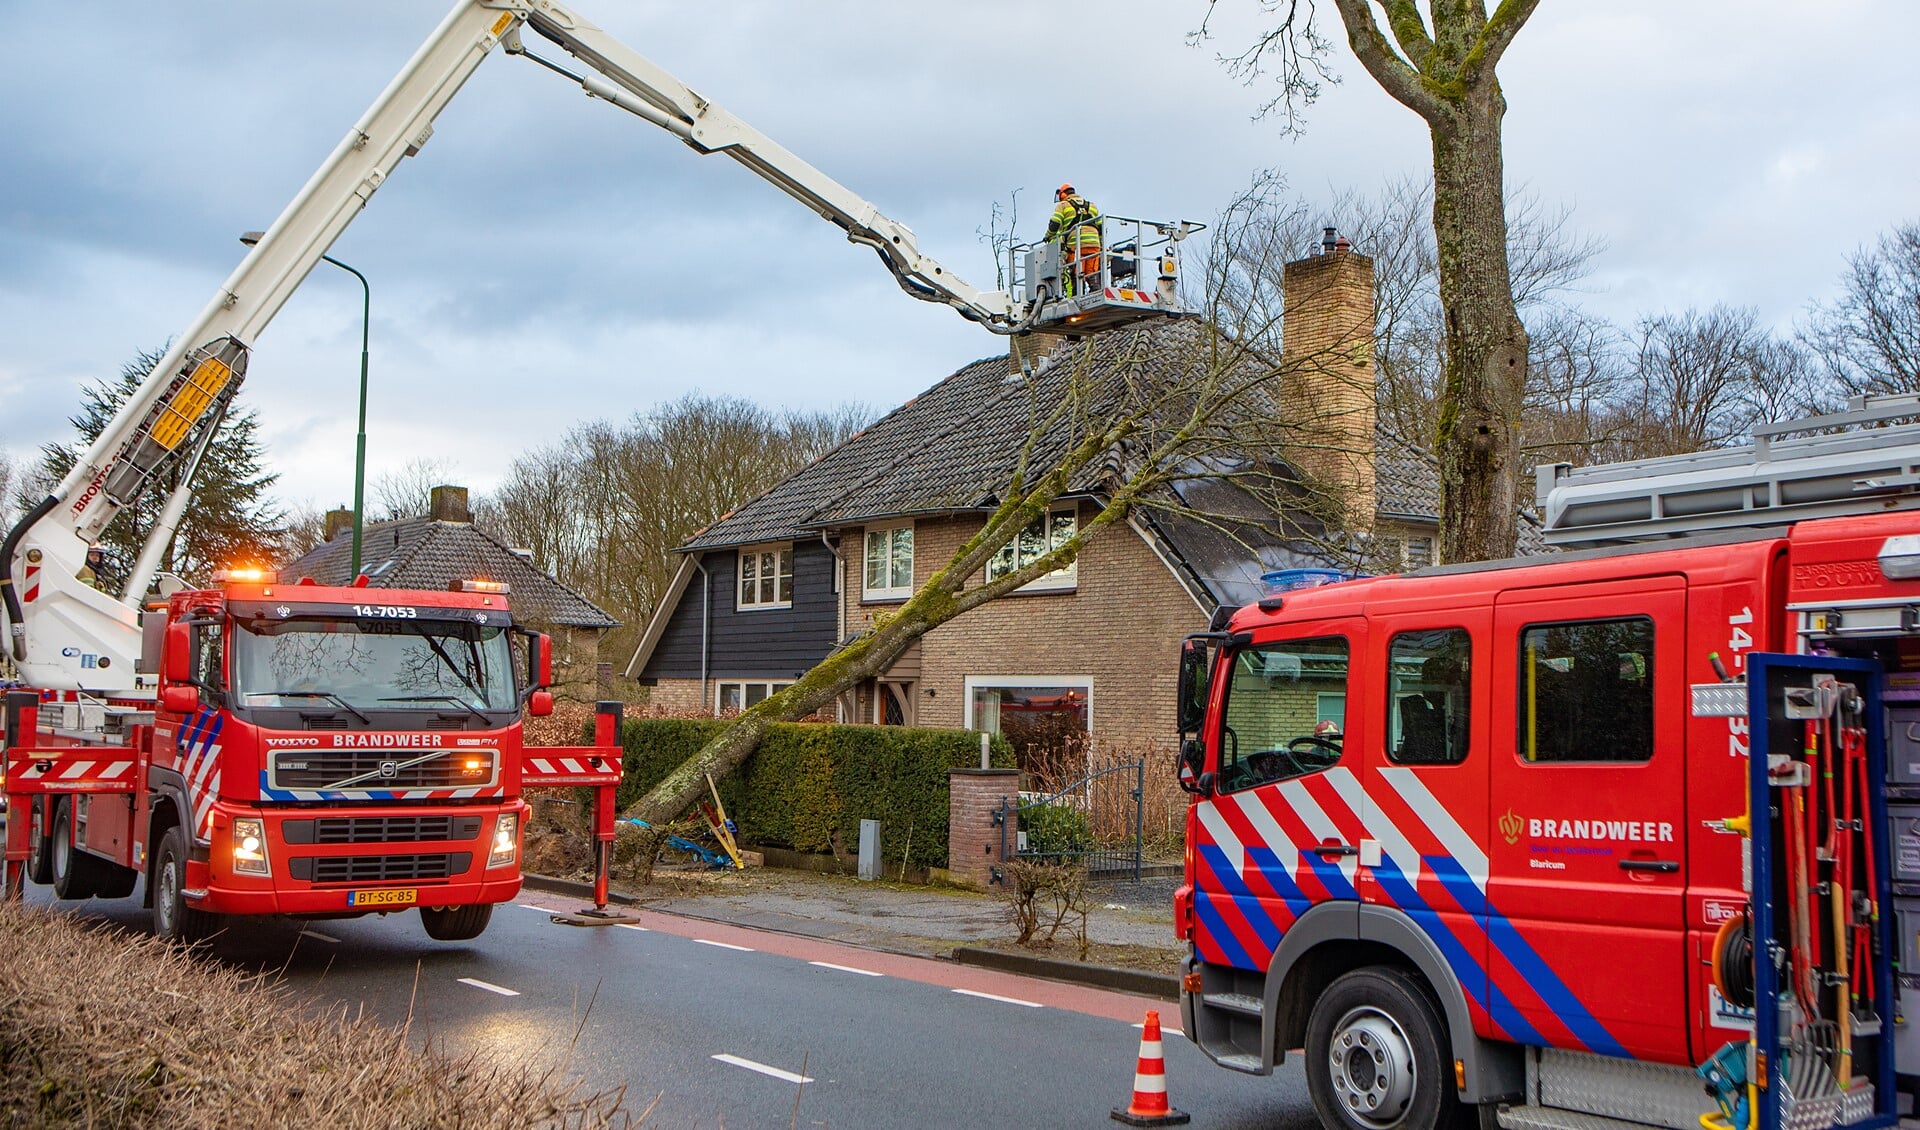 Brandweer Huizen en Brandweer Blaricum kwamen hulp verlenen. 